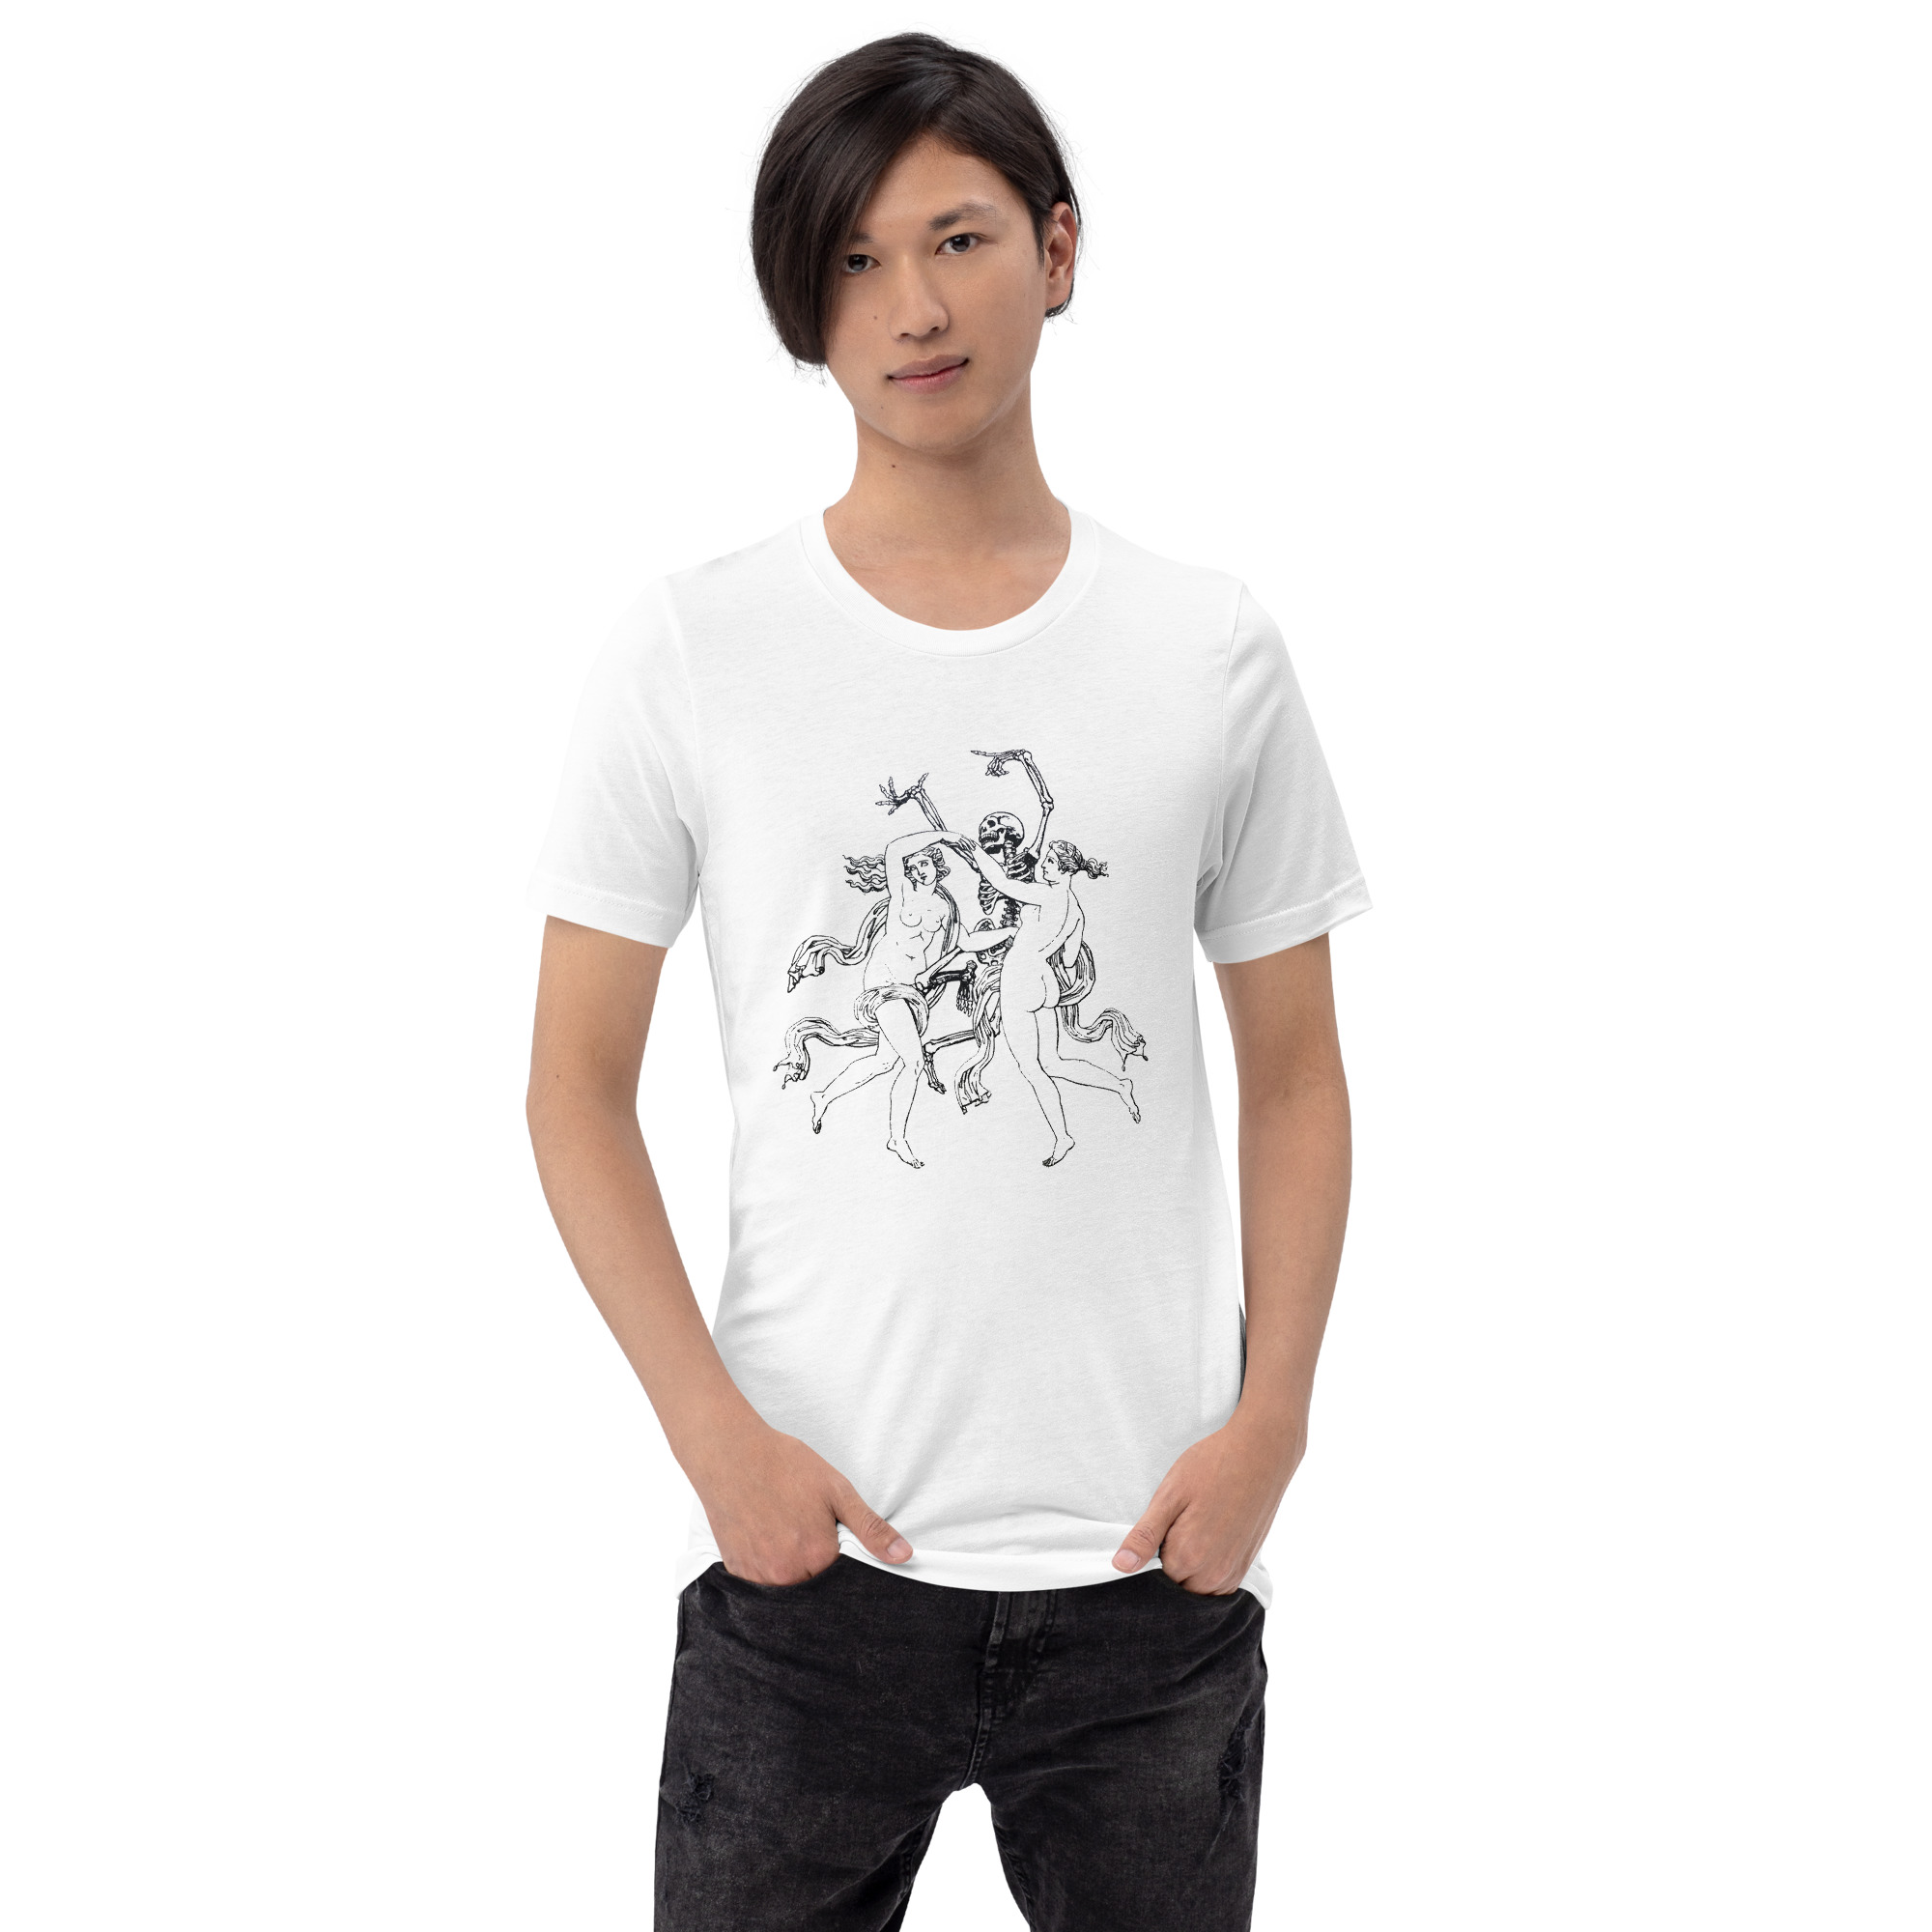 unisex-staple-t-shirt-white-front-6328b822ed913.jpg